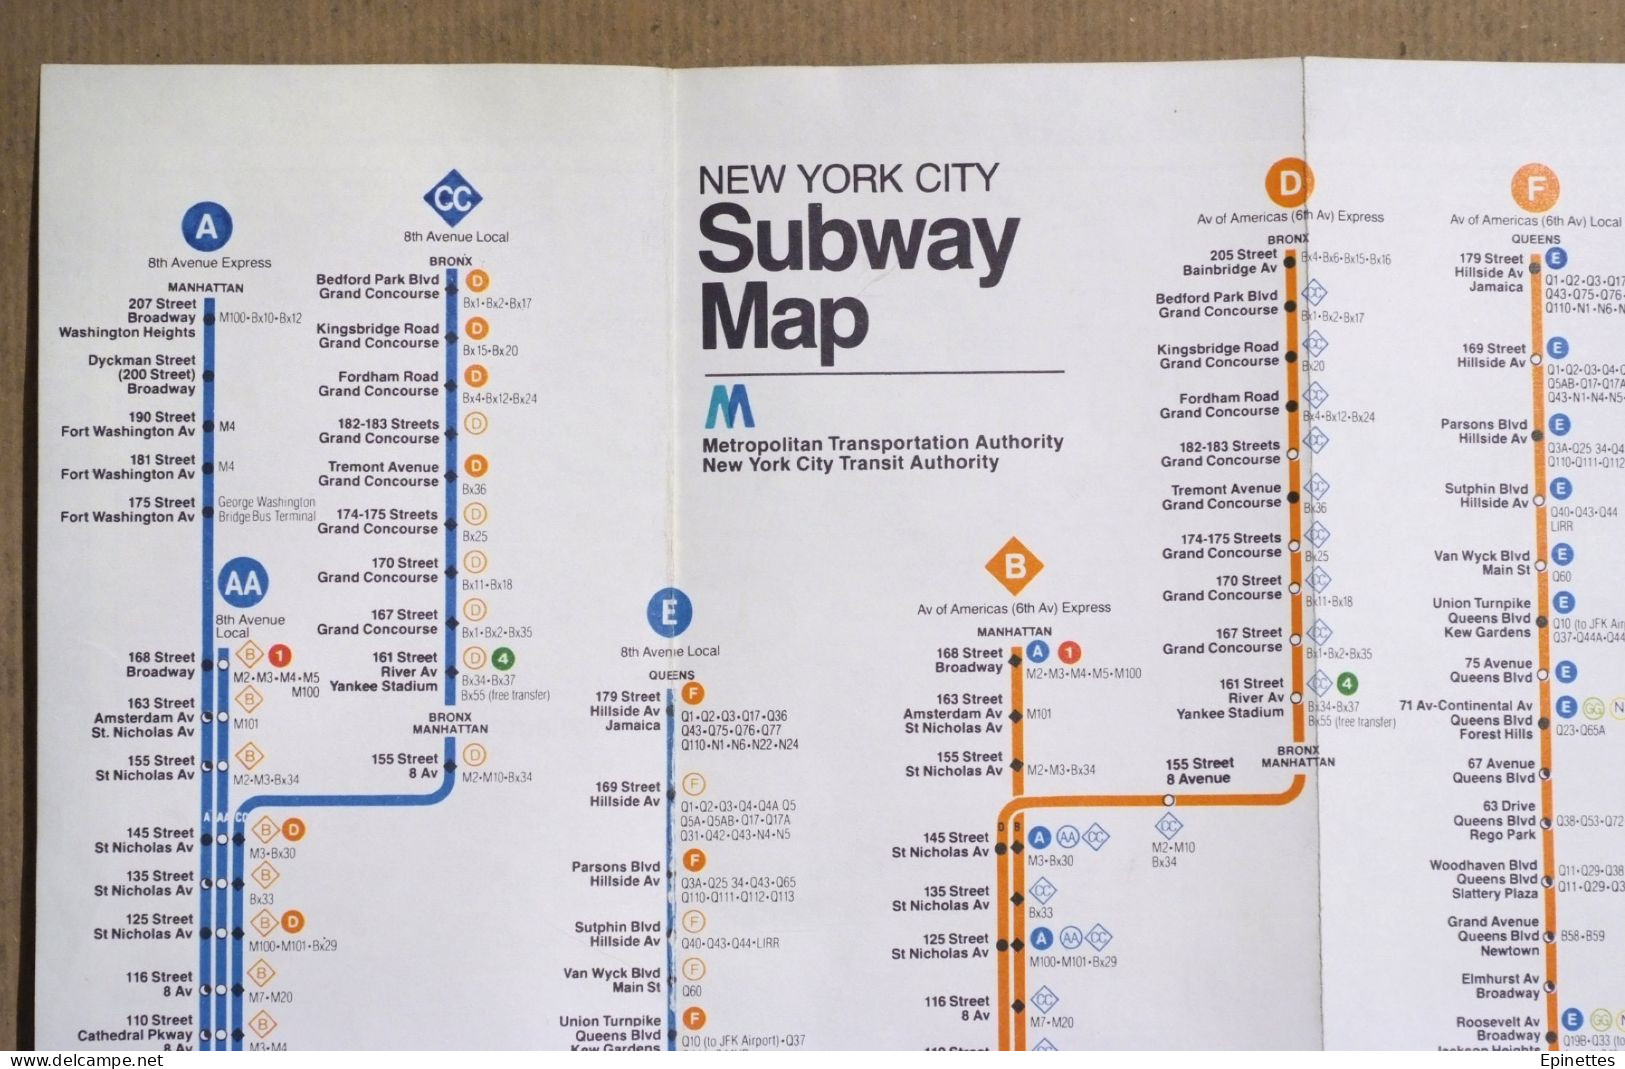 Plan Dépliant Du Métro De New-York, USA, NY City Subway Map, 1979-80 - Welt